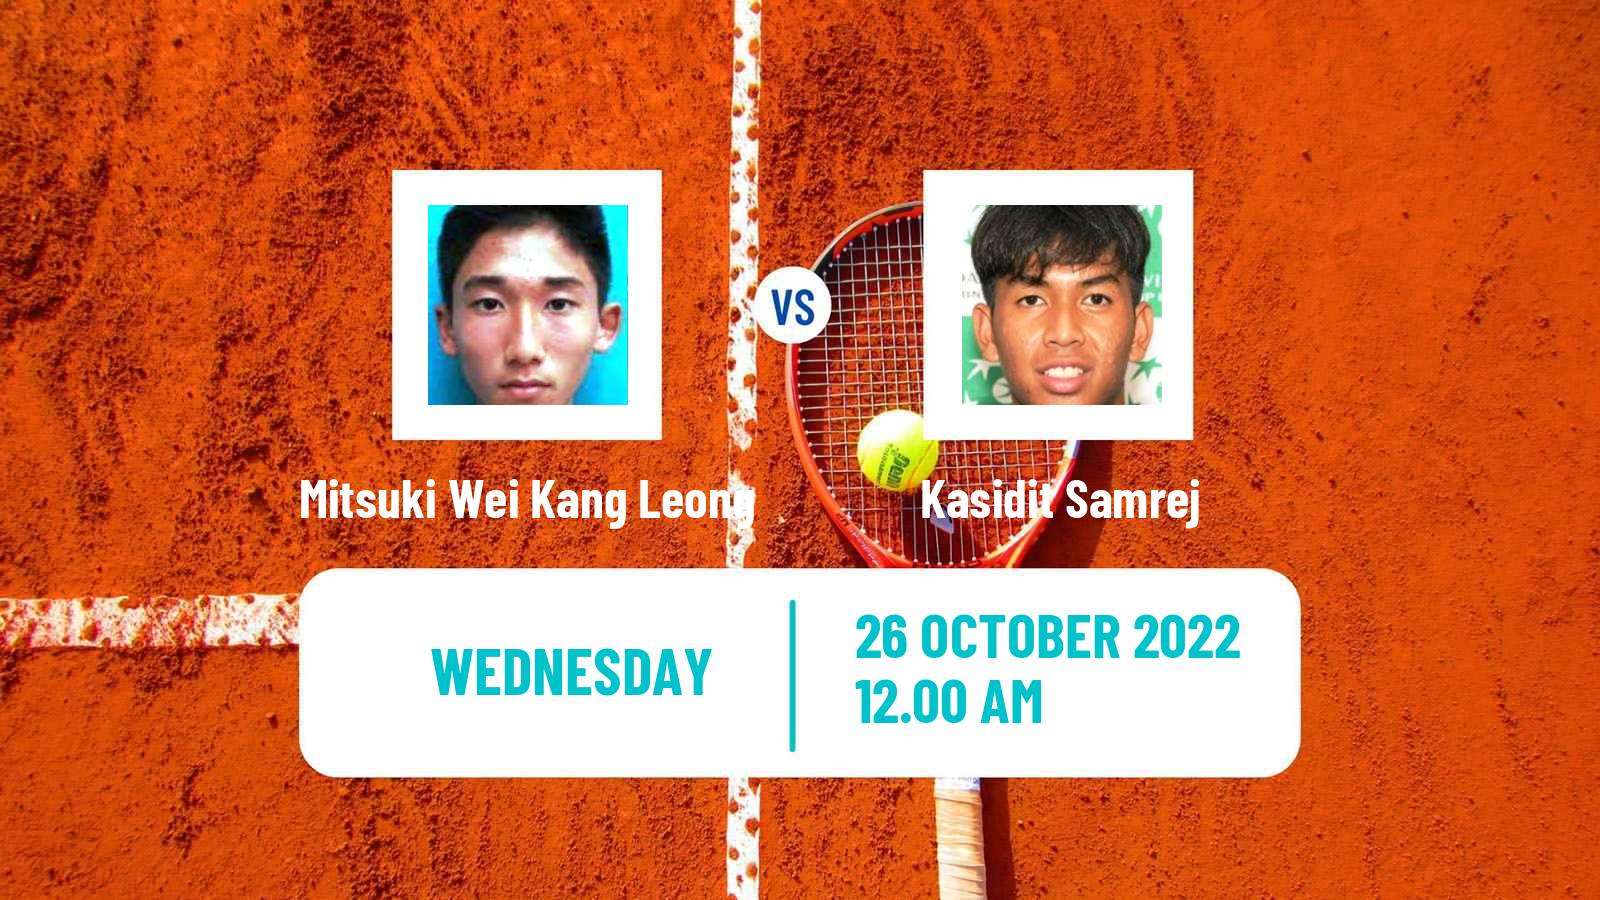 Tennis ITF Tournaments Mitsuki Wei Kang Leong - Kasidit Samrej